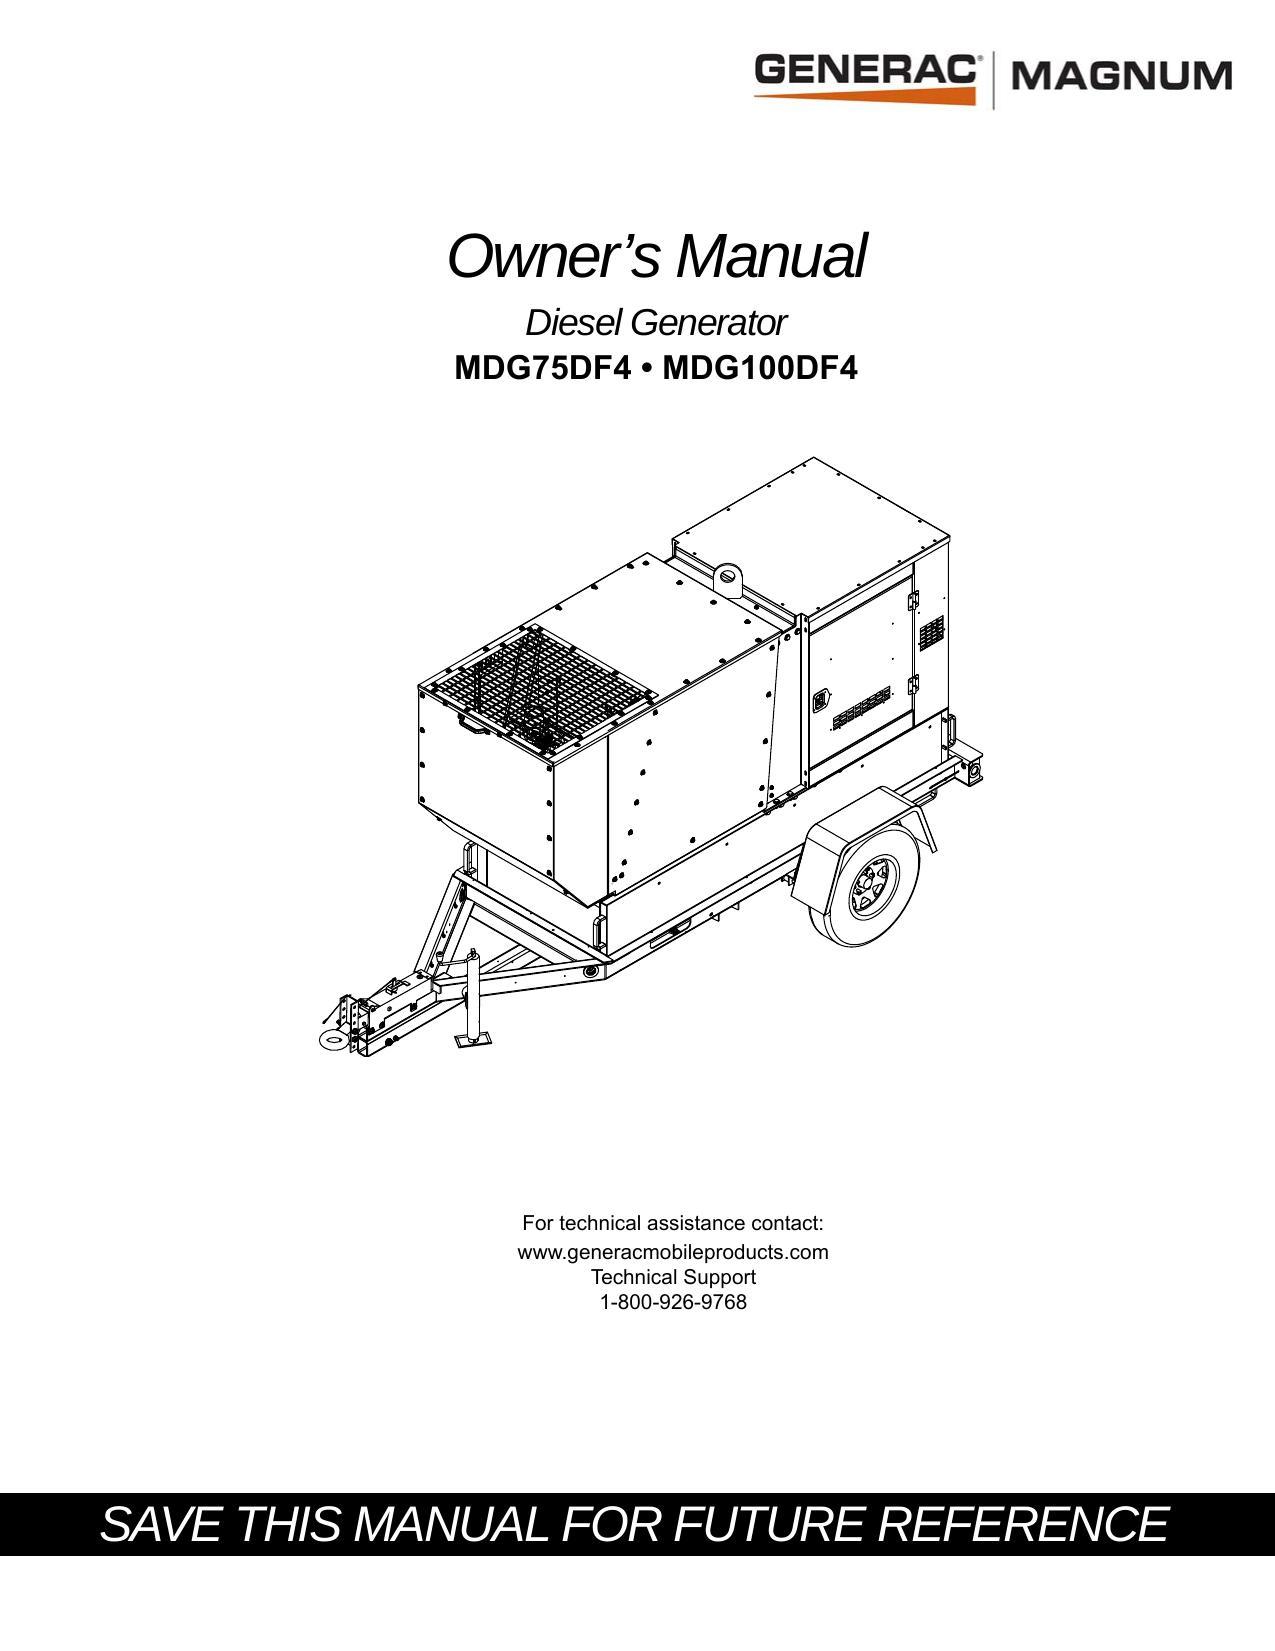 owners-manual-diesel-generator-mdg7sdf4-mdgioodf4.pdf